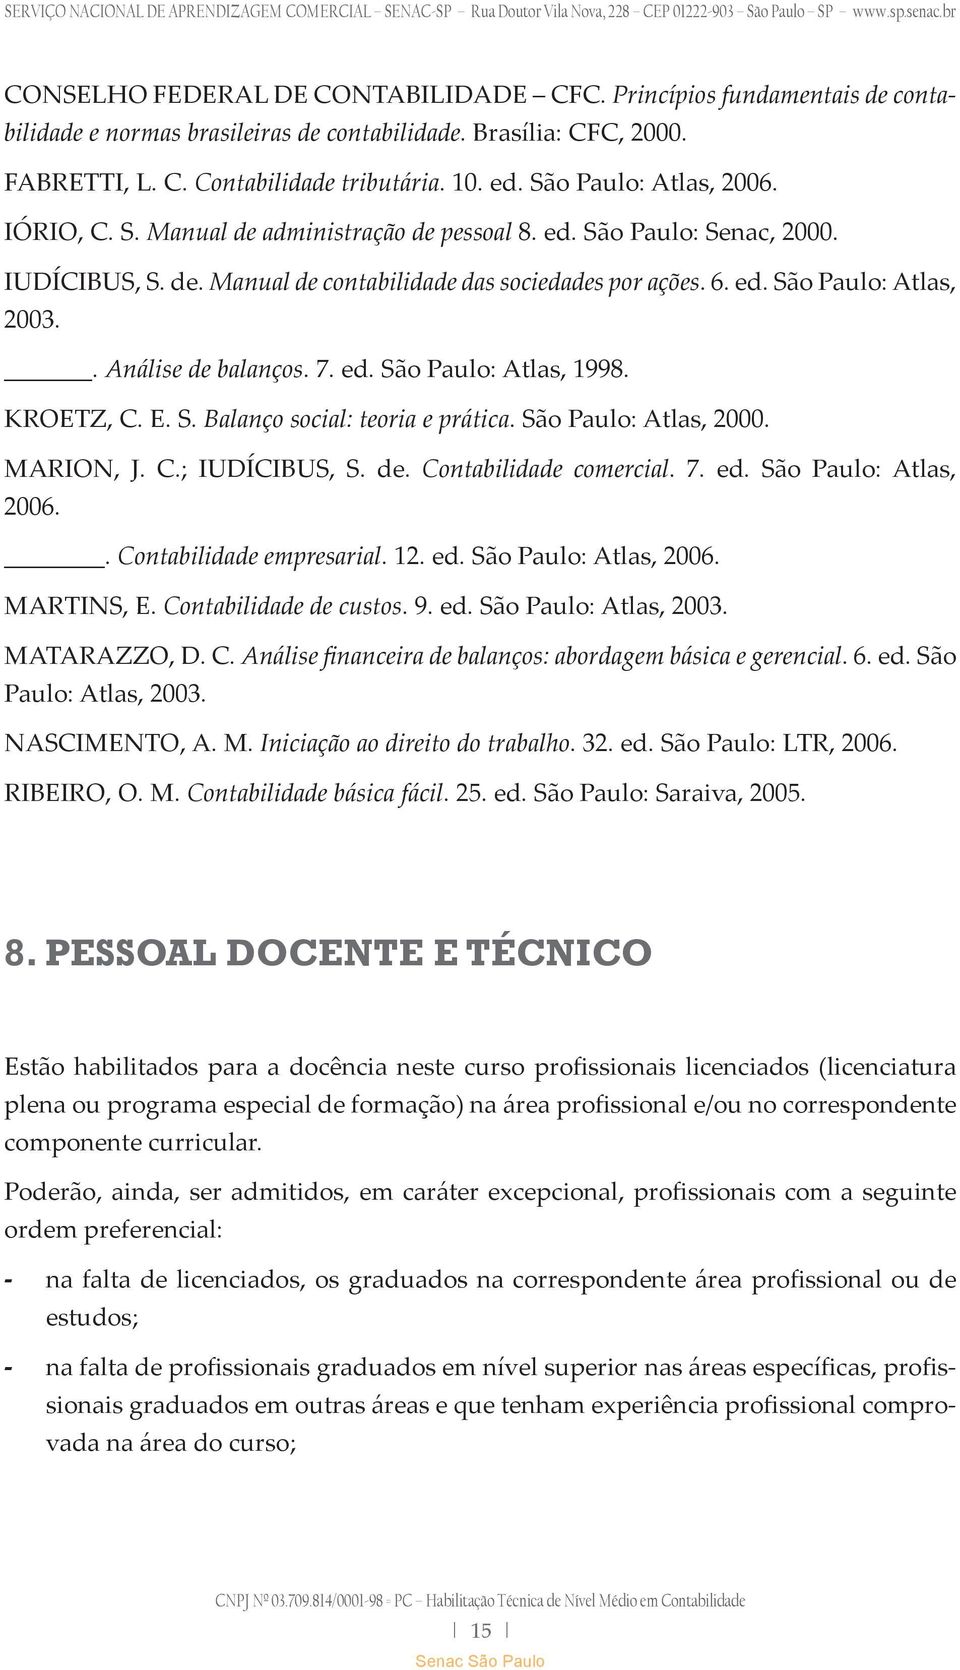 . Análise de balanços. 7. ed. São Paulo: Atlas, 1998. KROETZ, C. E. S. Balanço social: teoria e prática. São Paulo: Atlas, 2000. MARION, J. C.; IUDÍCIBUS, S. de. Contabilidade comercial. 7. ed. São Paulo: Atlas, 2006.